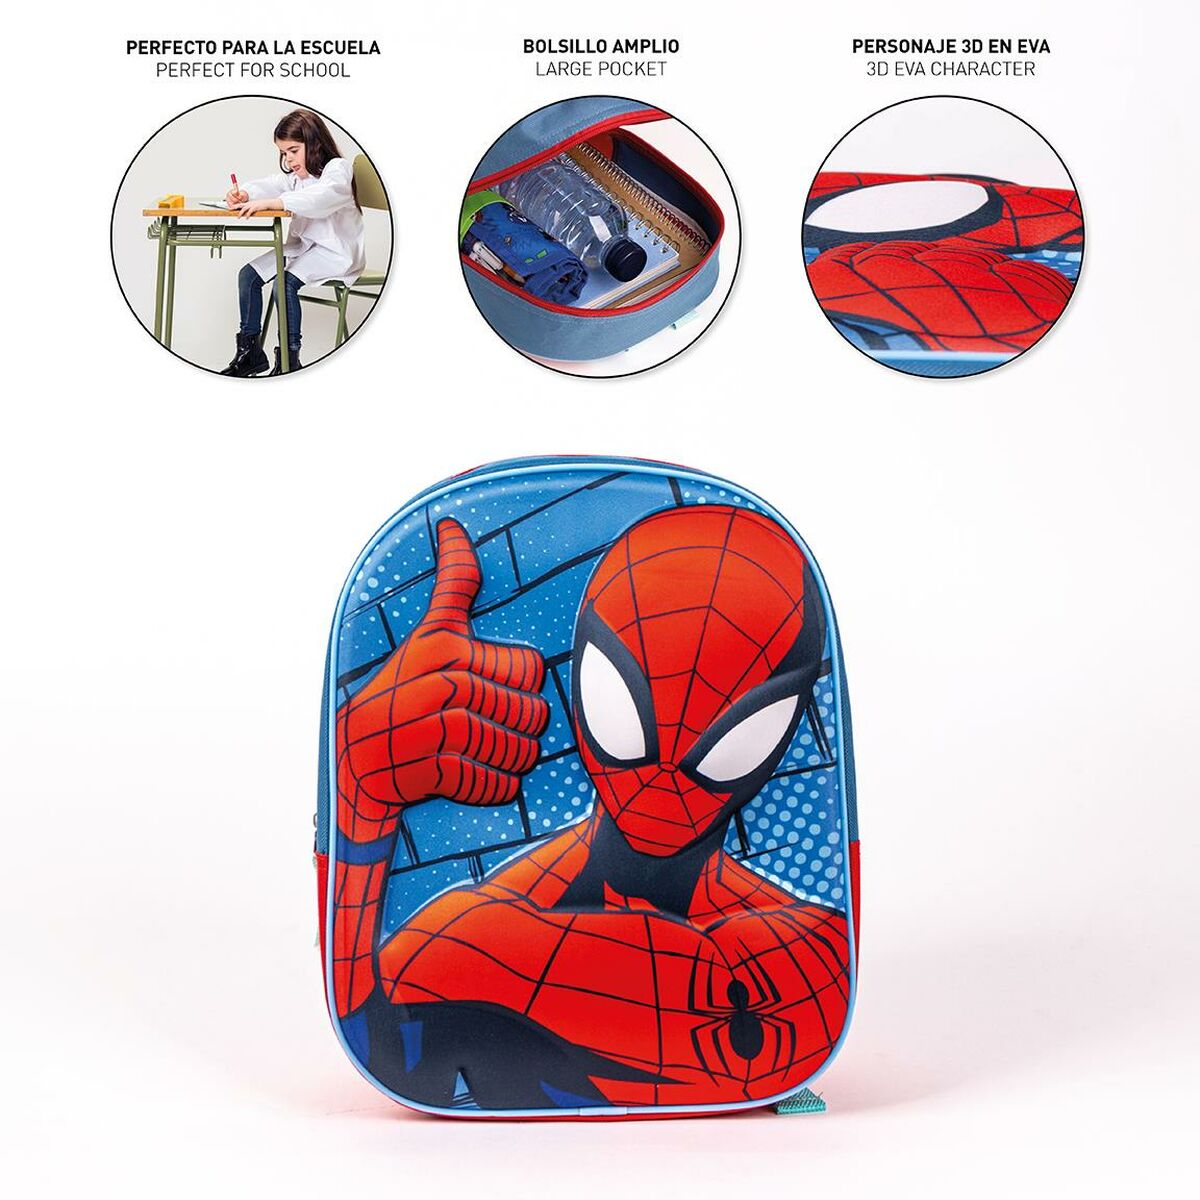 Kinderrucksack 3D Spider-Man Rot Blau 25 x 31 x 10 cm